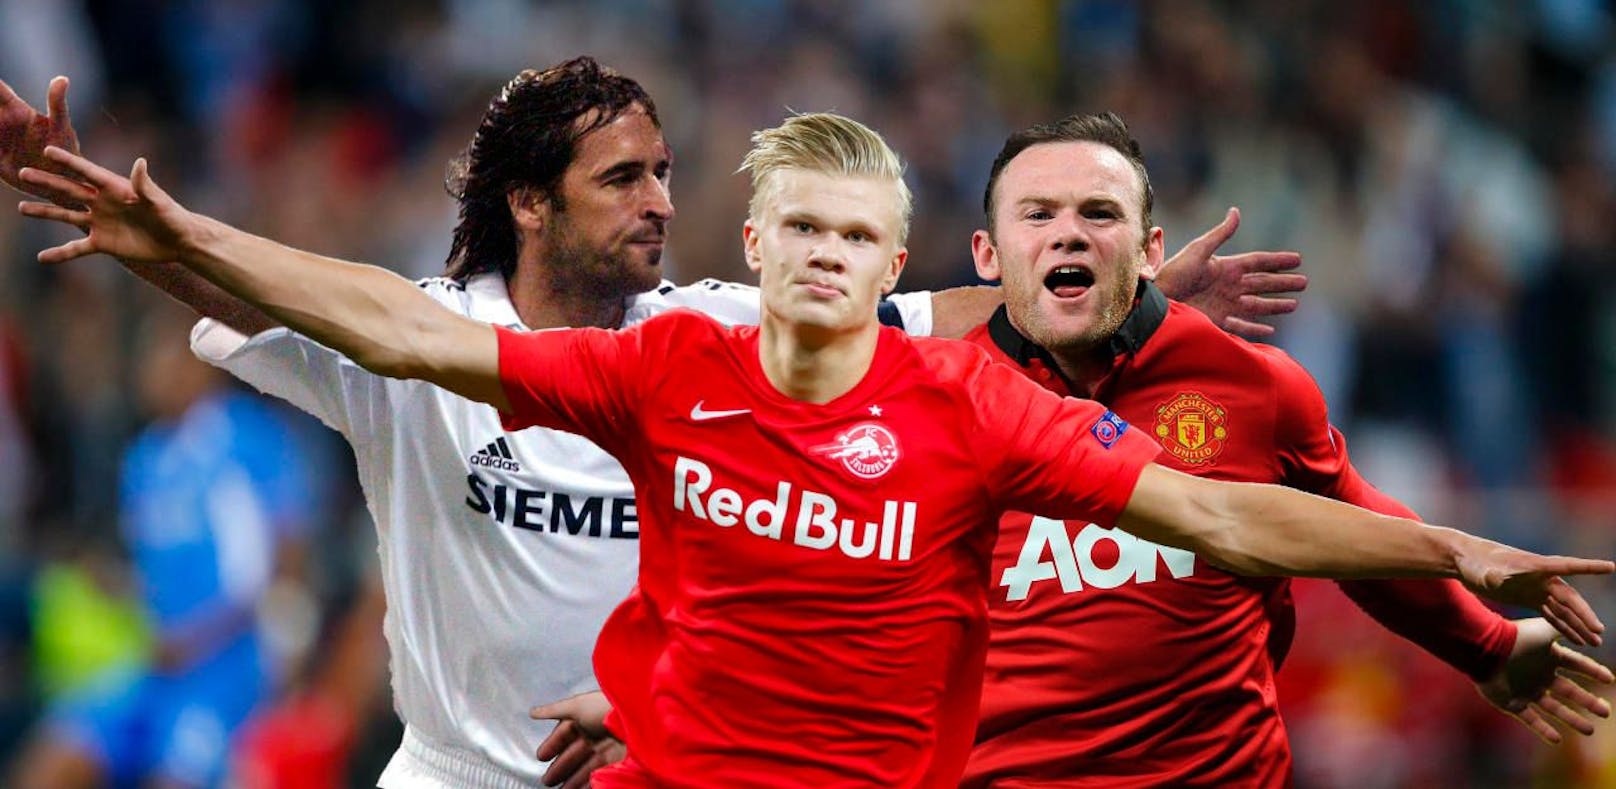 Eerling Haaland ist der neue Superstürmer von Red Bull Salzburg. Links seht ihr Raul in jungen Jahren bei Real, rechts Wayne Rooney bei Manchester United.